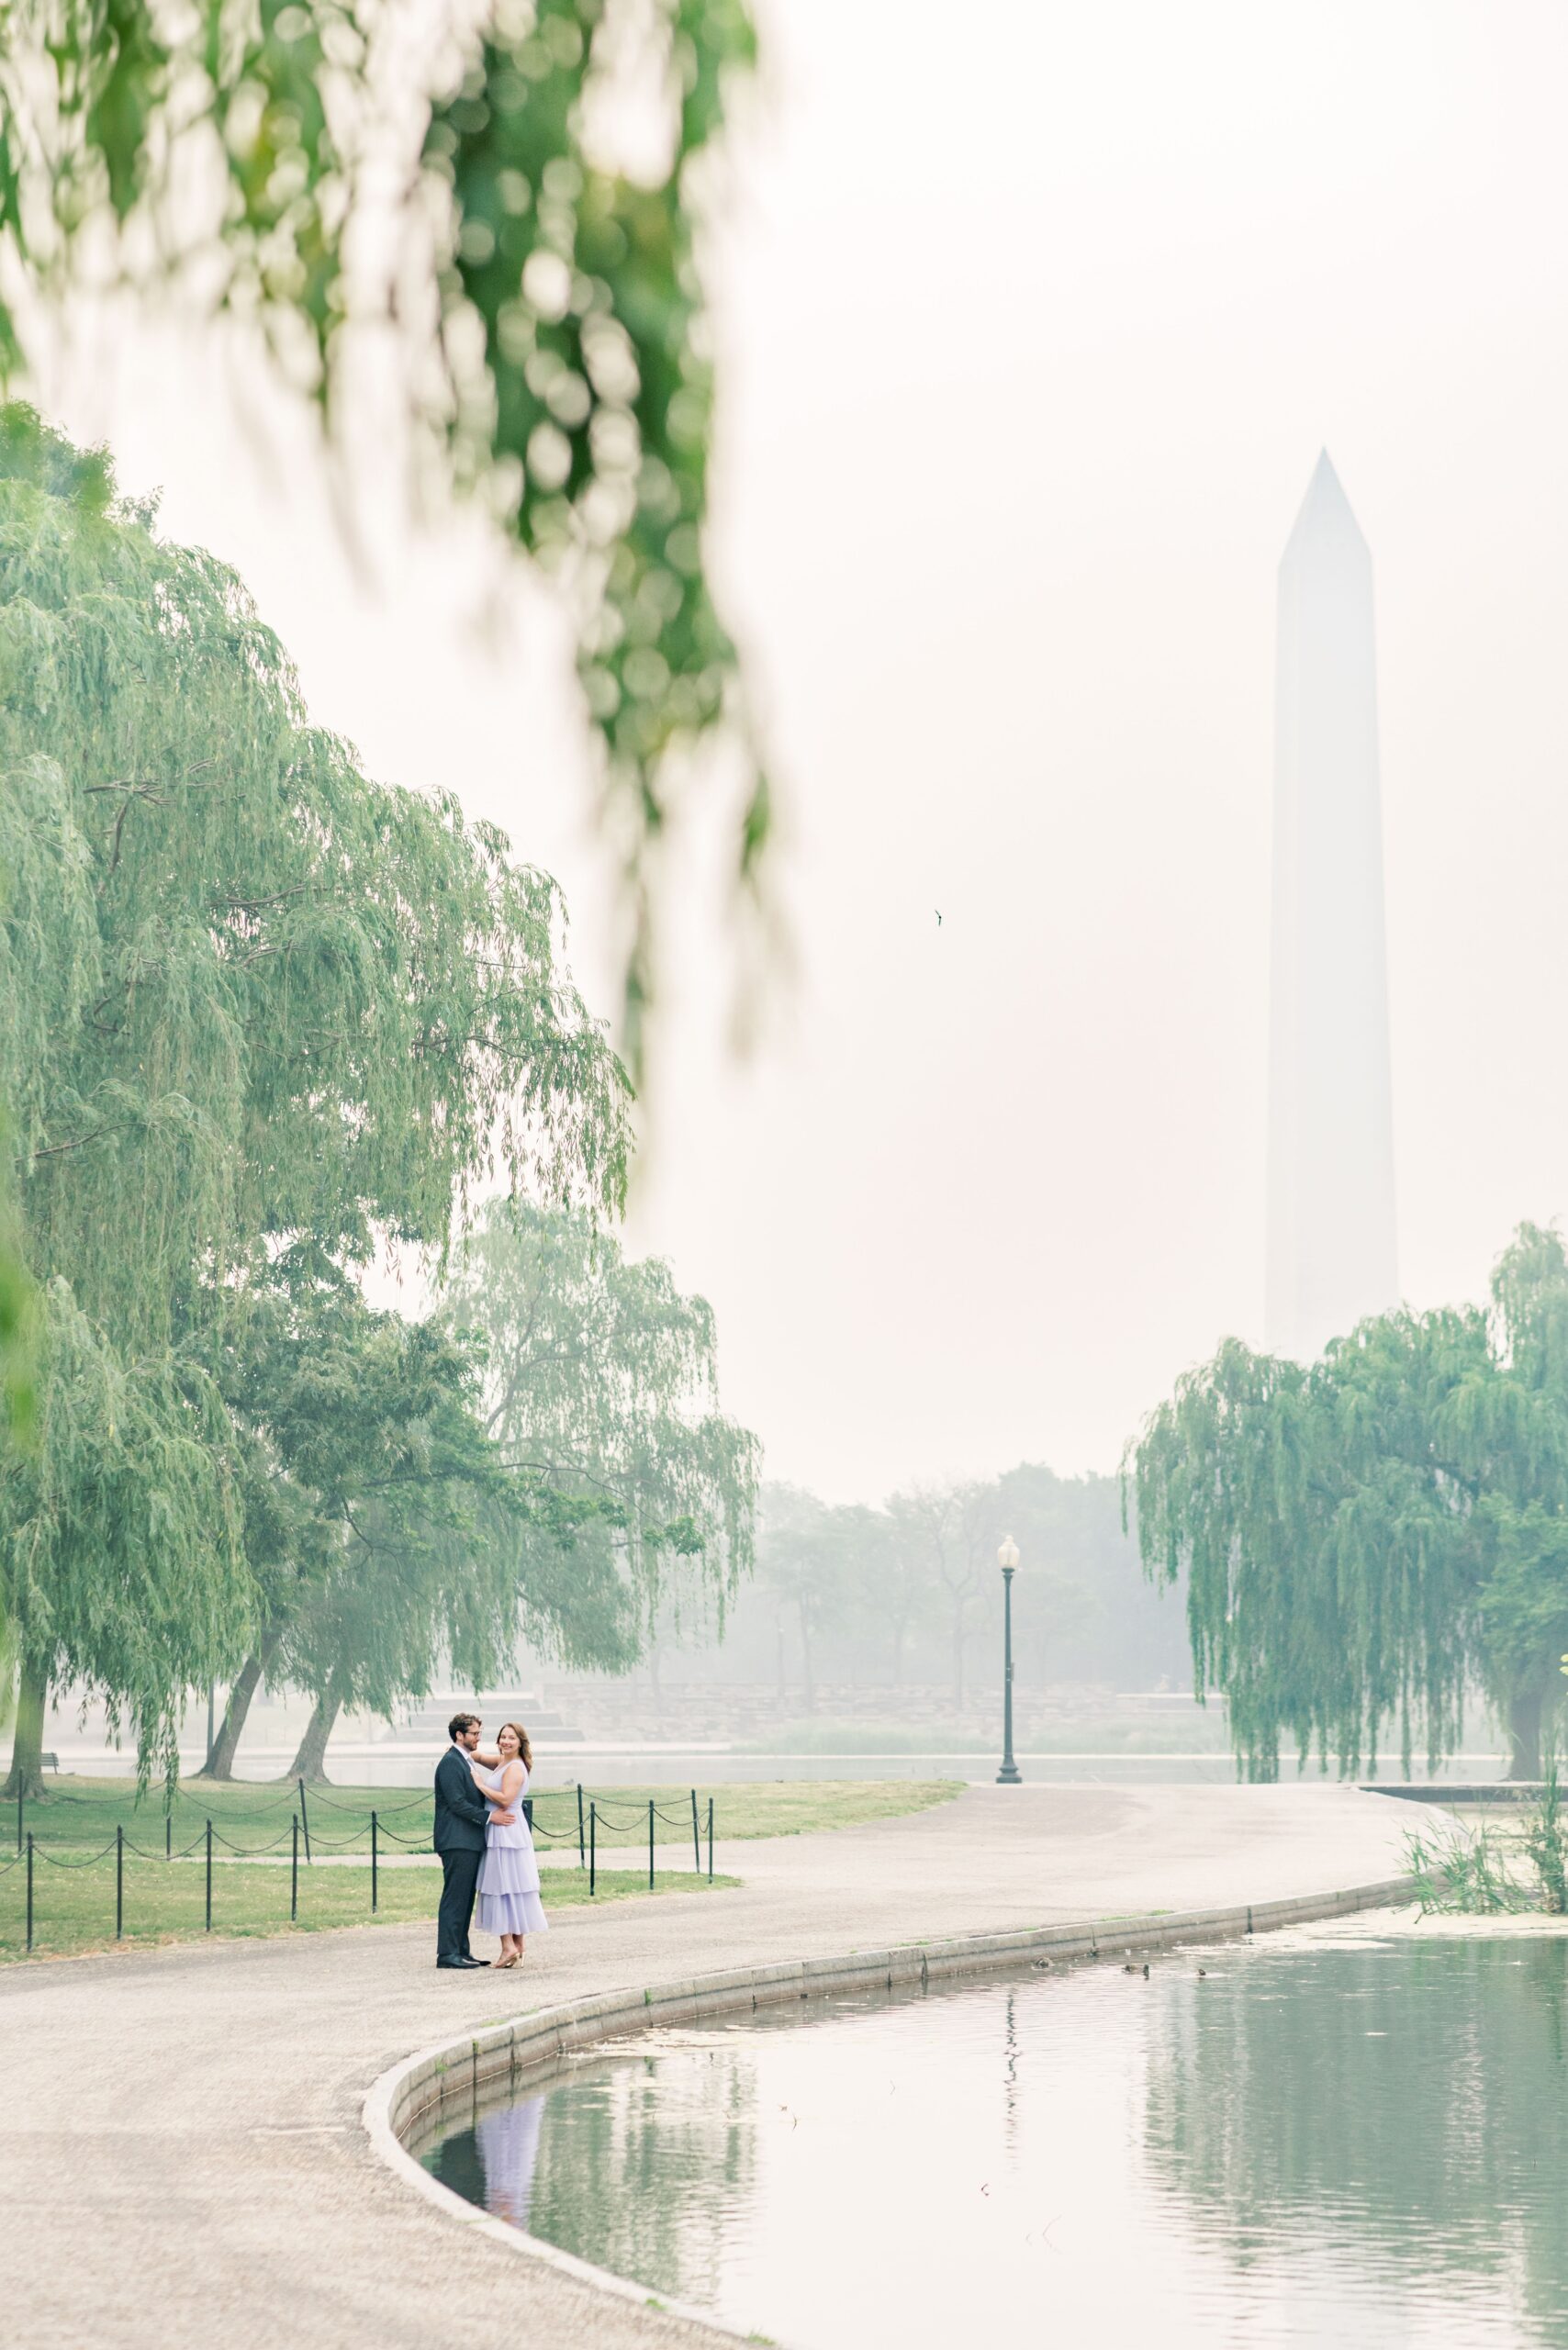 Hazy Washington Monument engagement photos in Washington, DC.